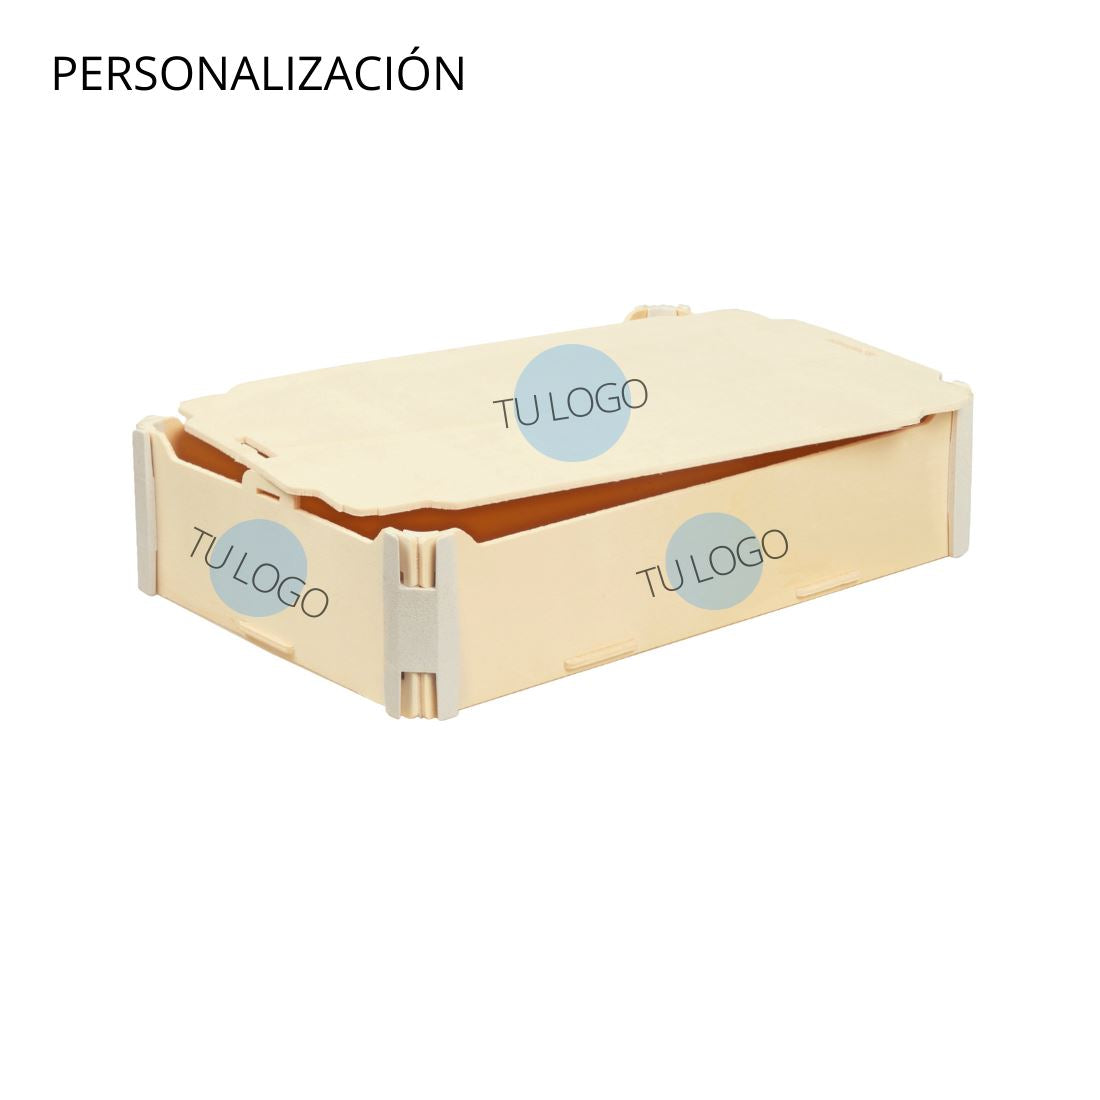 Cajas con tapa Sincla-box 